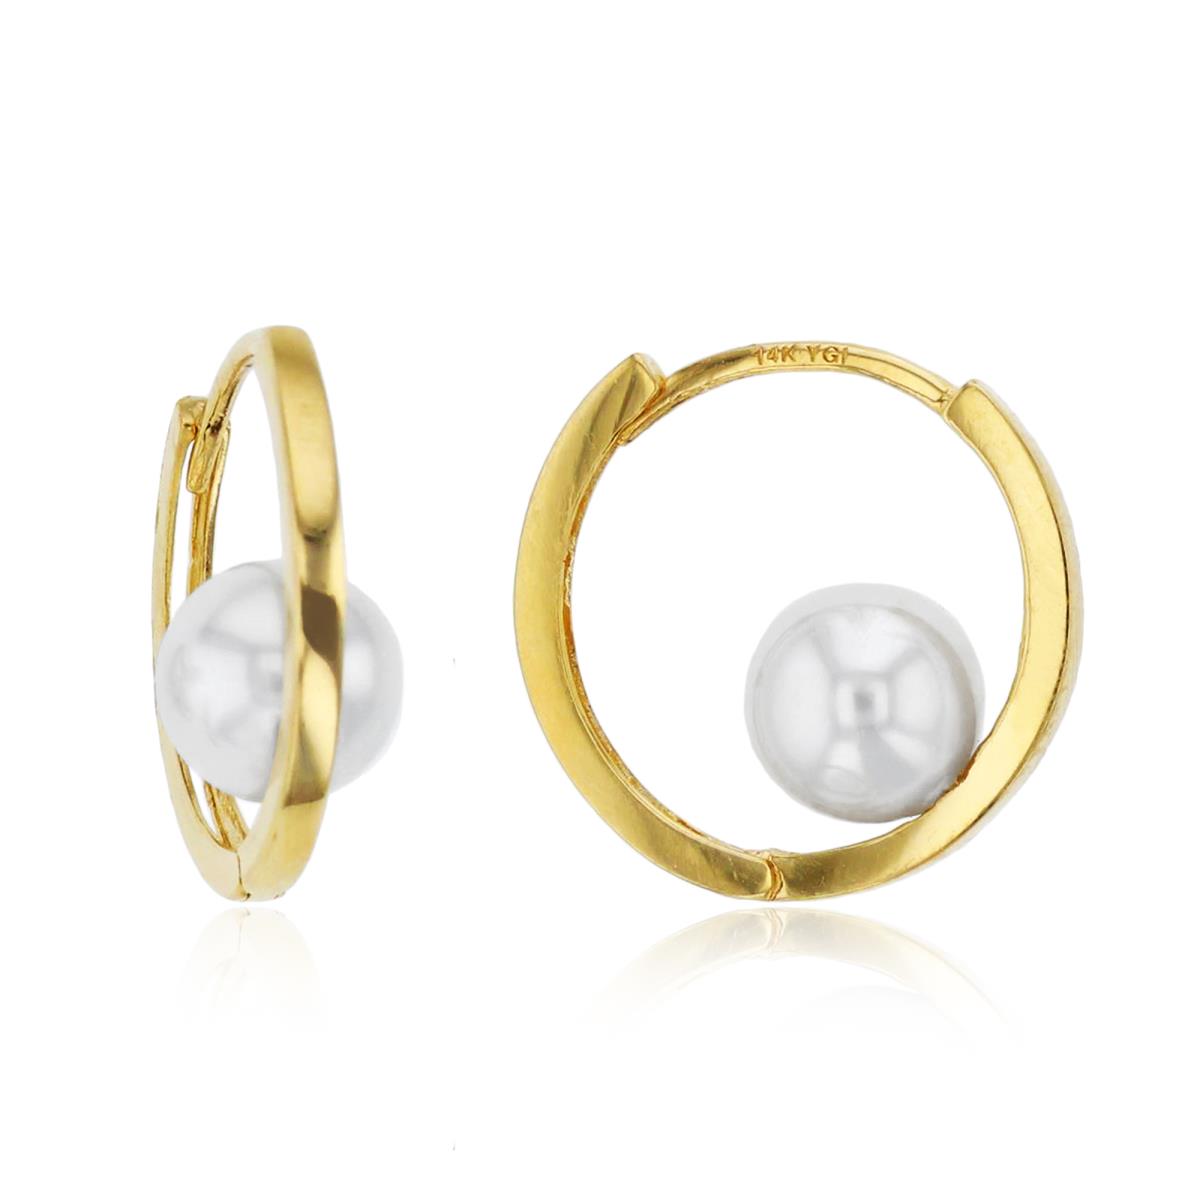 14K Yellow Gold 7mm Synthetic Pearl Inside Huggie Earrings